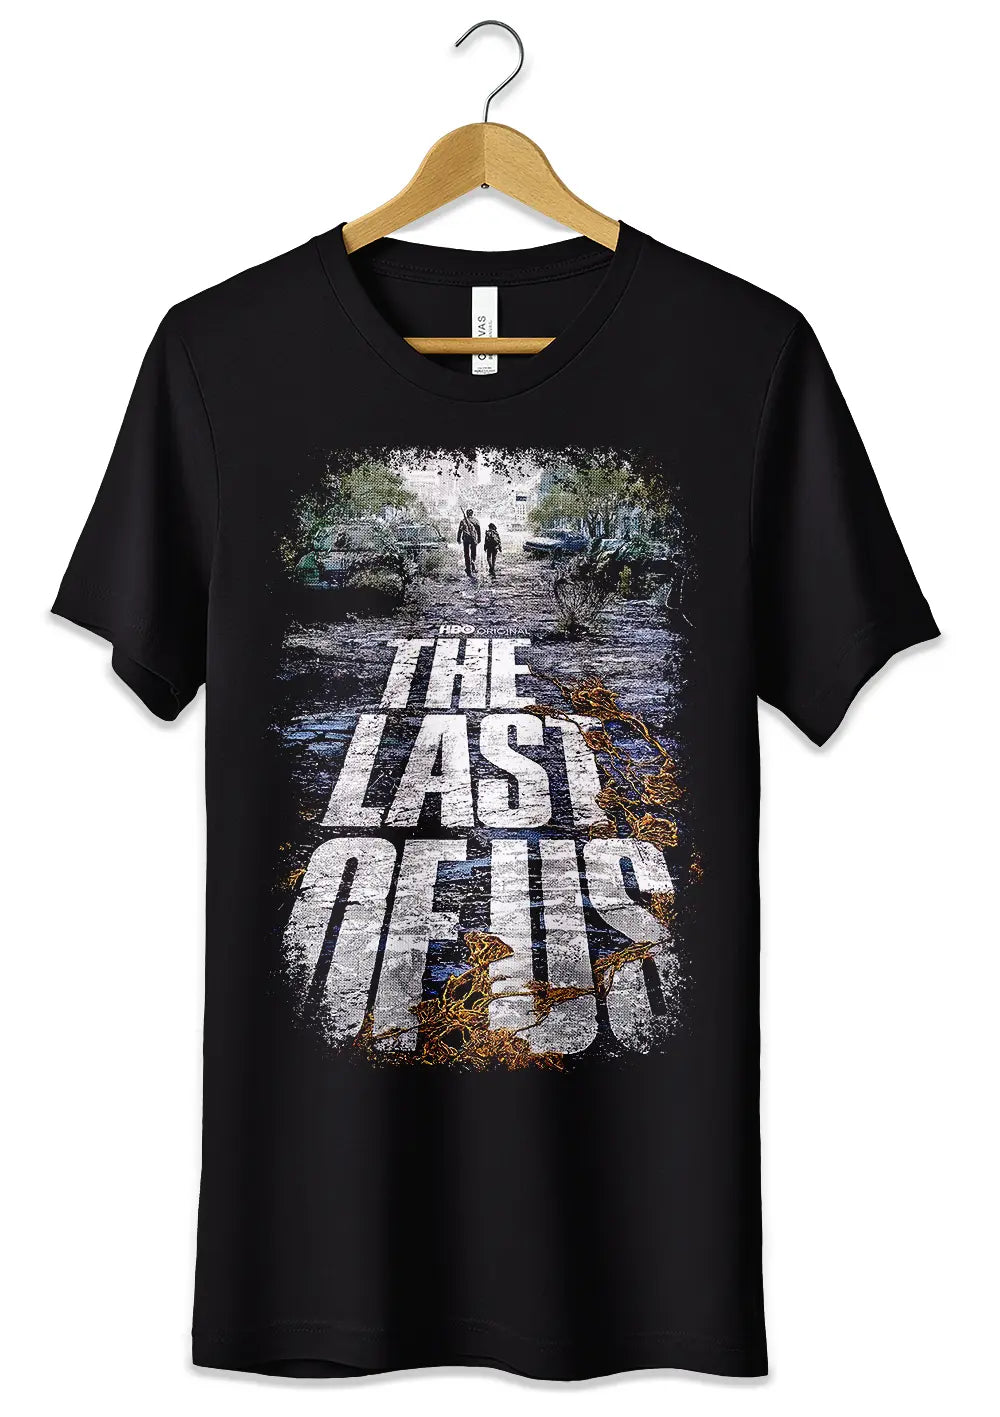 T-Shirt Maglietta Maniche Corte Nera Dedicata a The Last of Us Serie TV Videogames